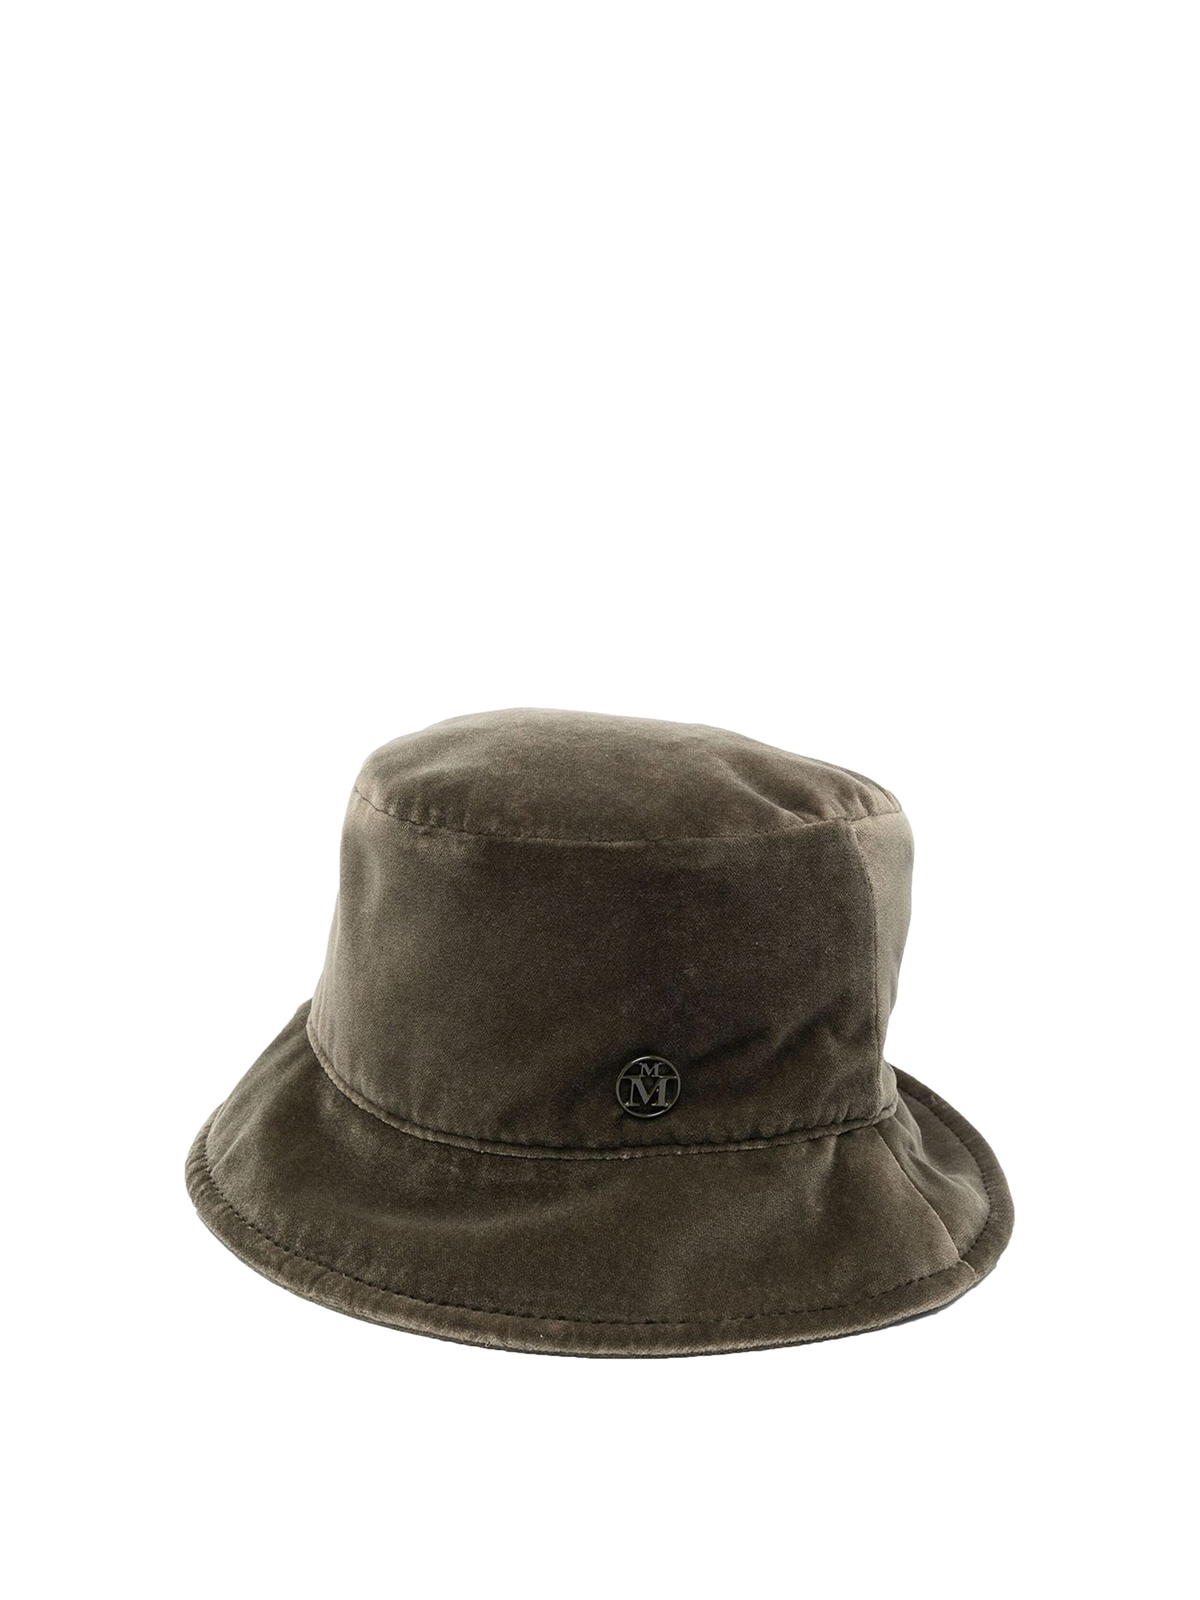 Maison Michel Jason Velvet Bucket Hat In Light Brown